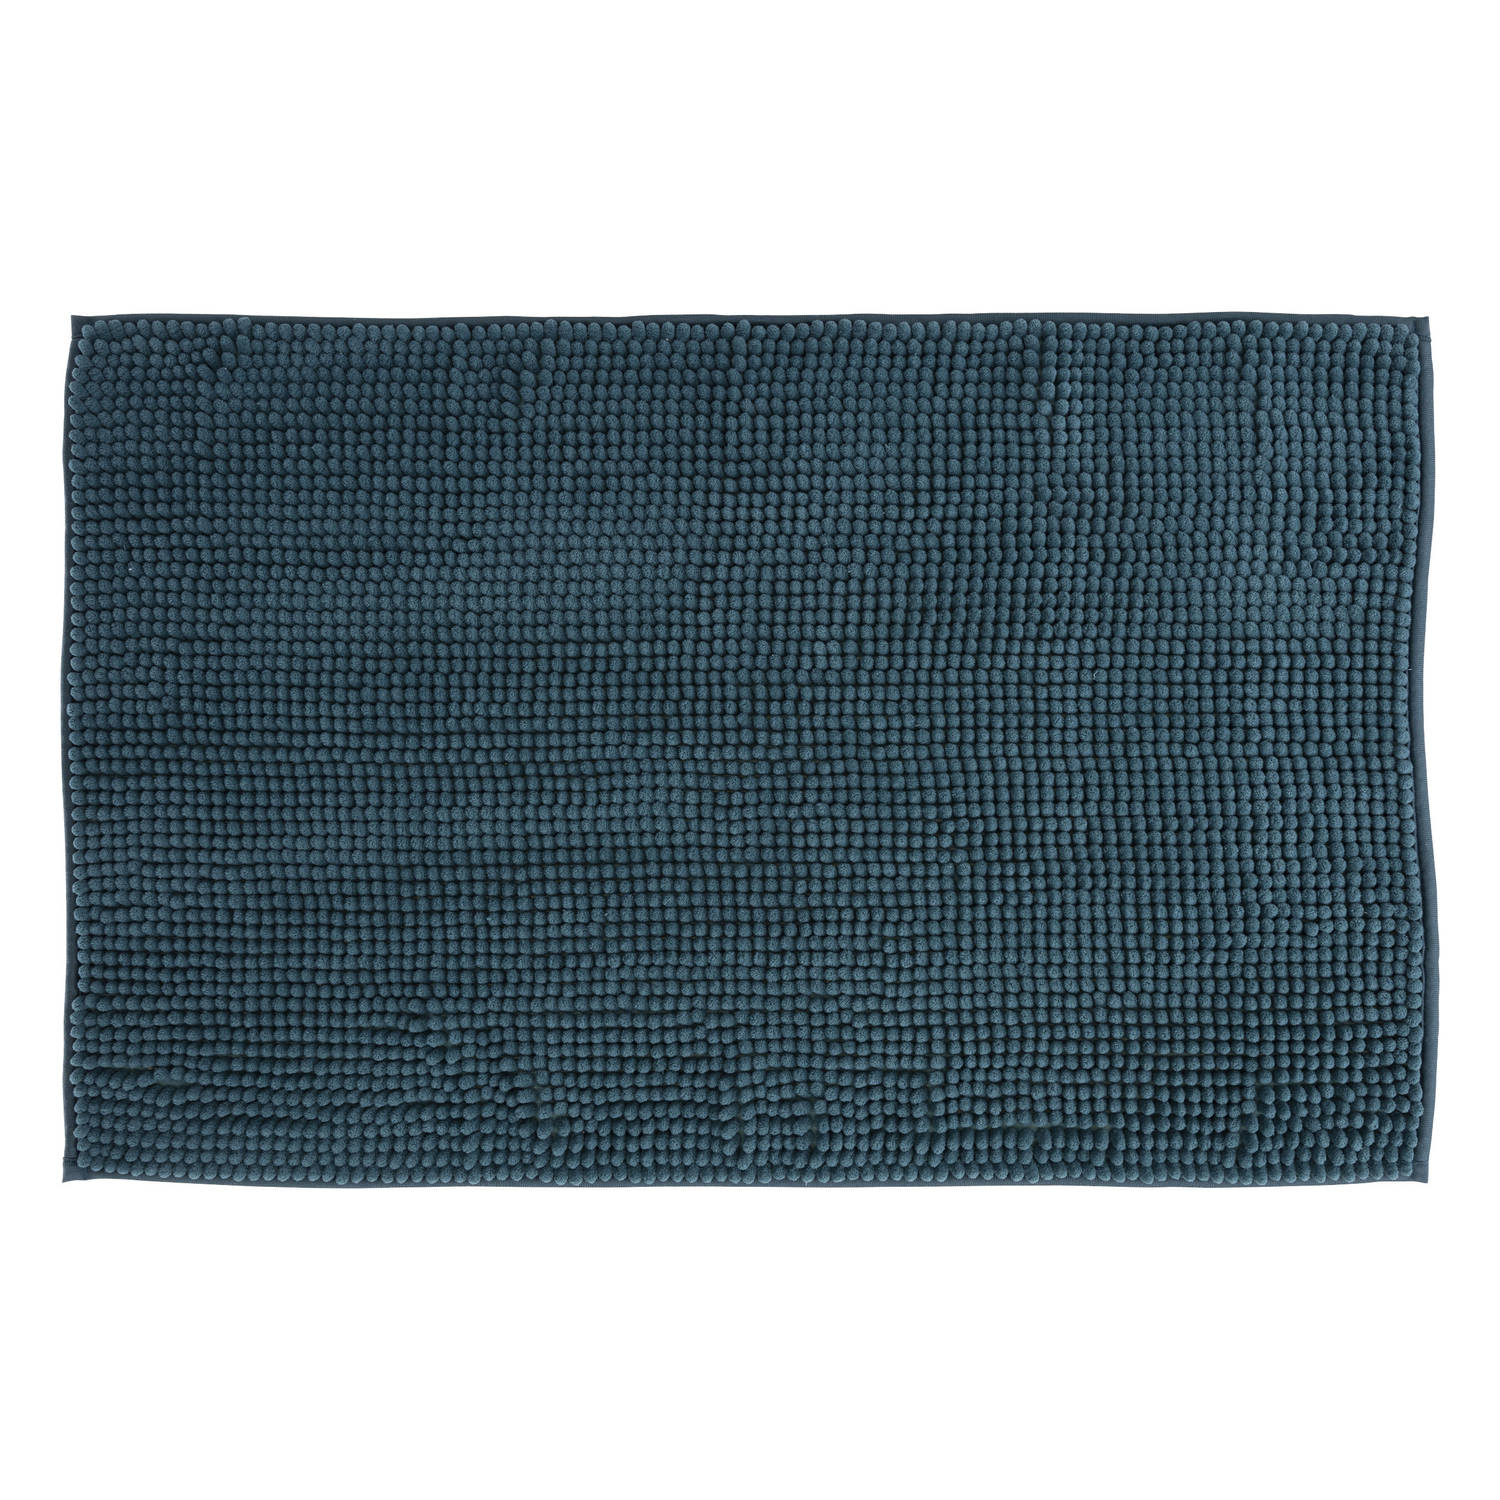 Atmosphera Badkamer kleedje/badmat voor de vloer - 50 x 80 cm - donkerblauw